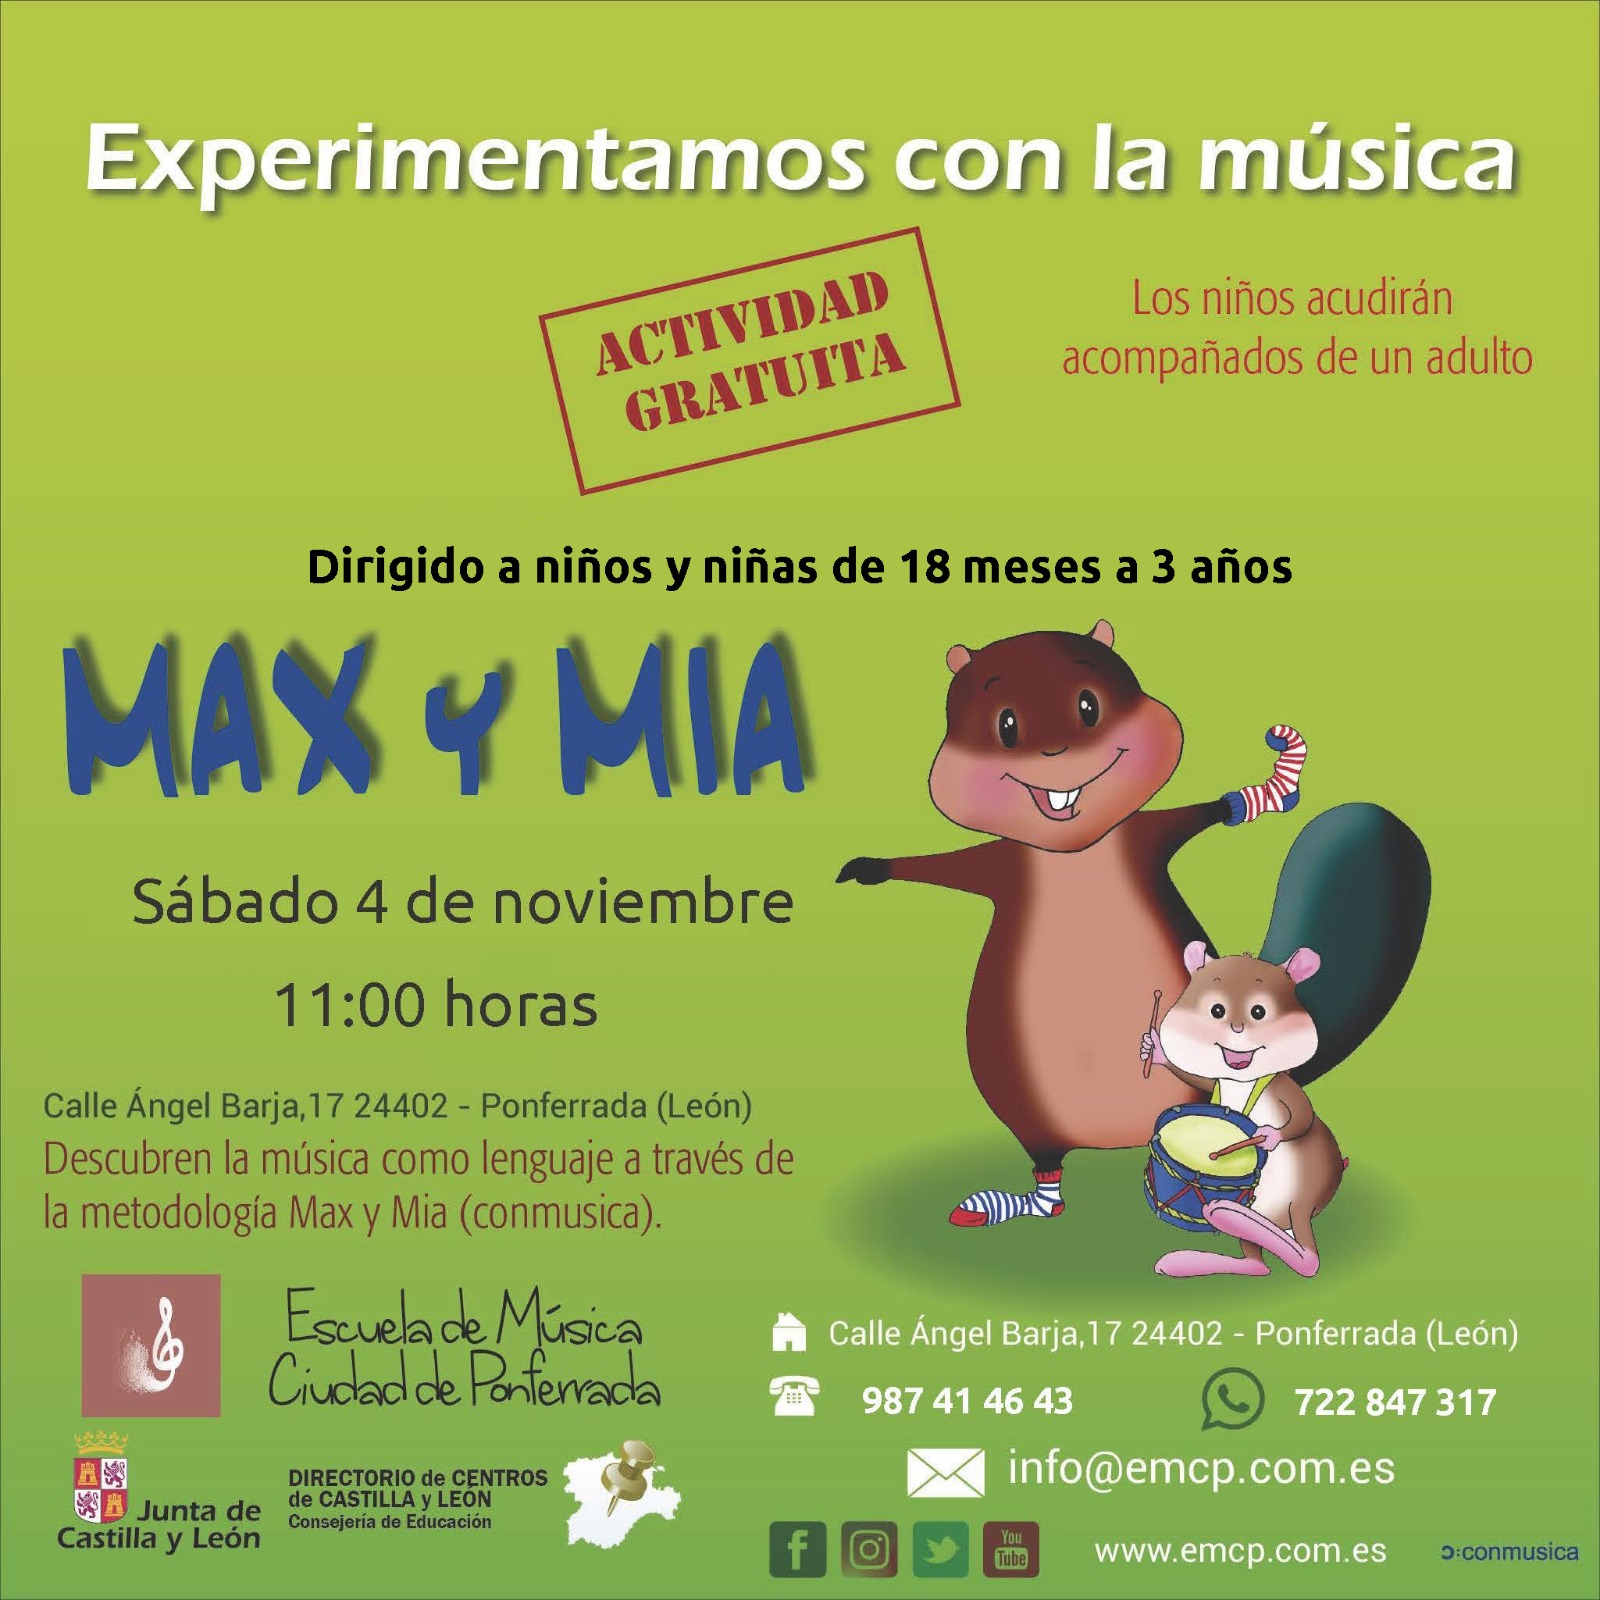 La Escuela de Música Ciudad de Ponferrada organiza este sábado el curso "Experimentamos con la música" 2